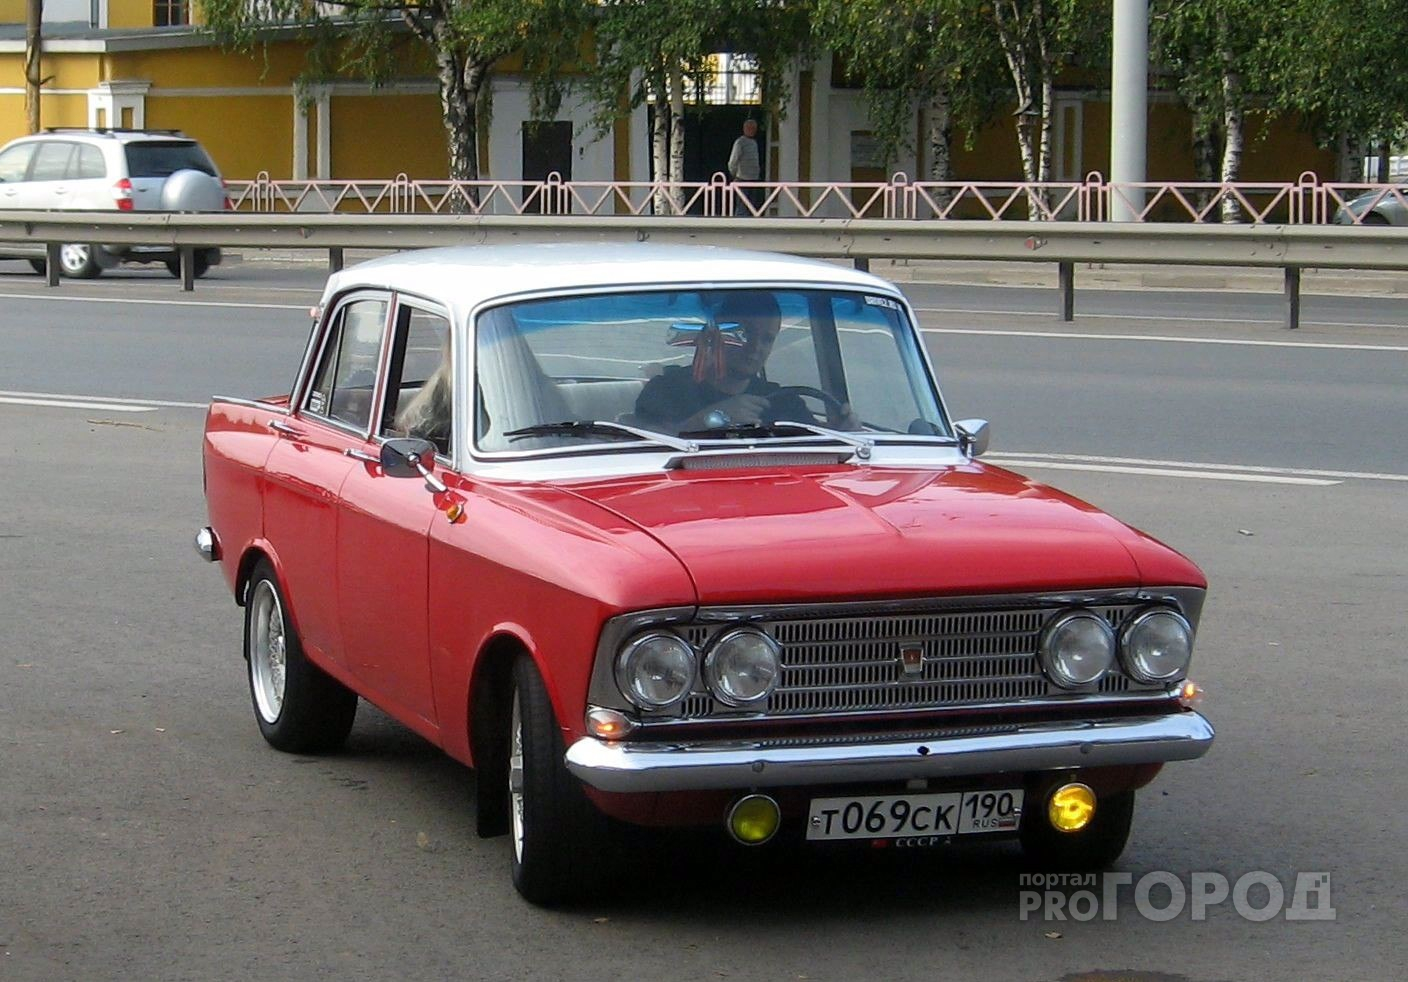 Тест: что это за Советский автомобиль?